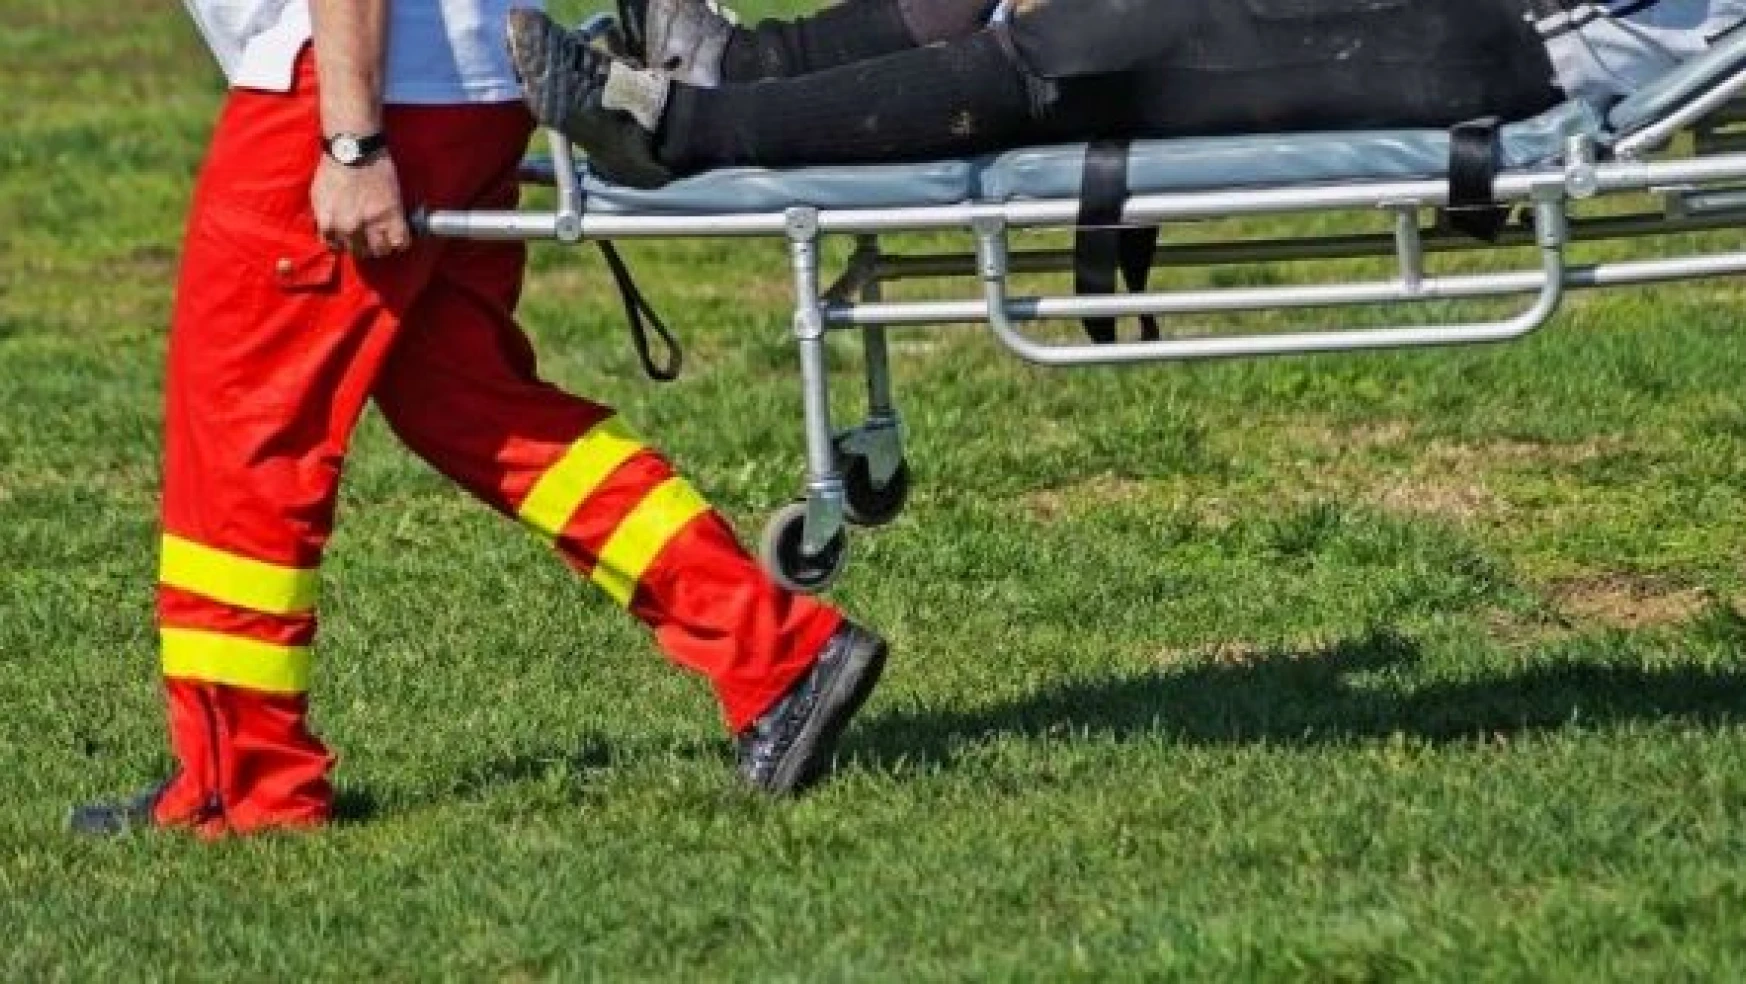 Yeni Malatyaspor'da 3 futbolcunun tedavisi devam ediyor